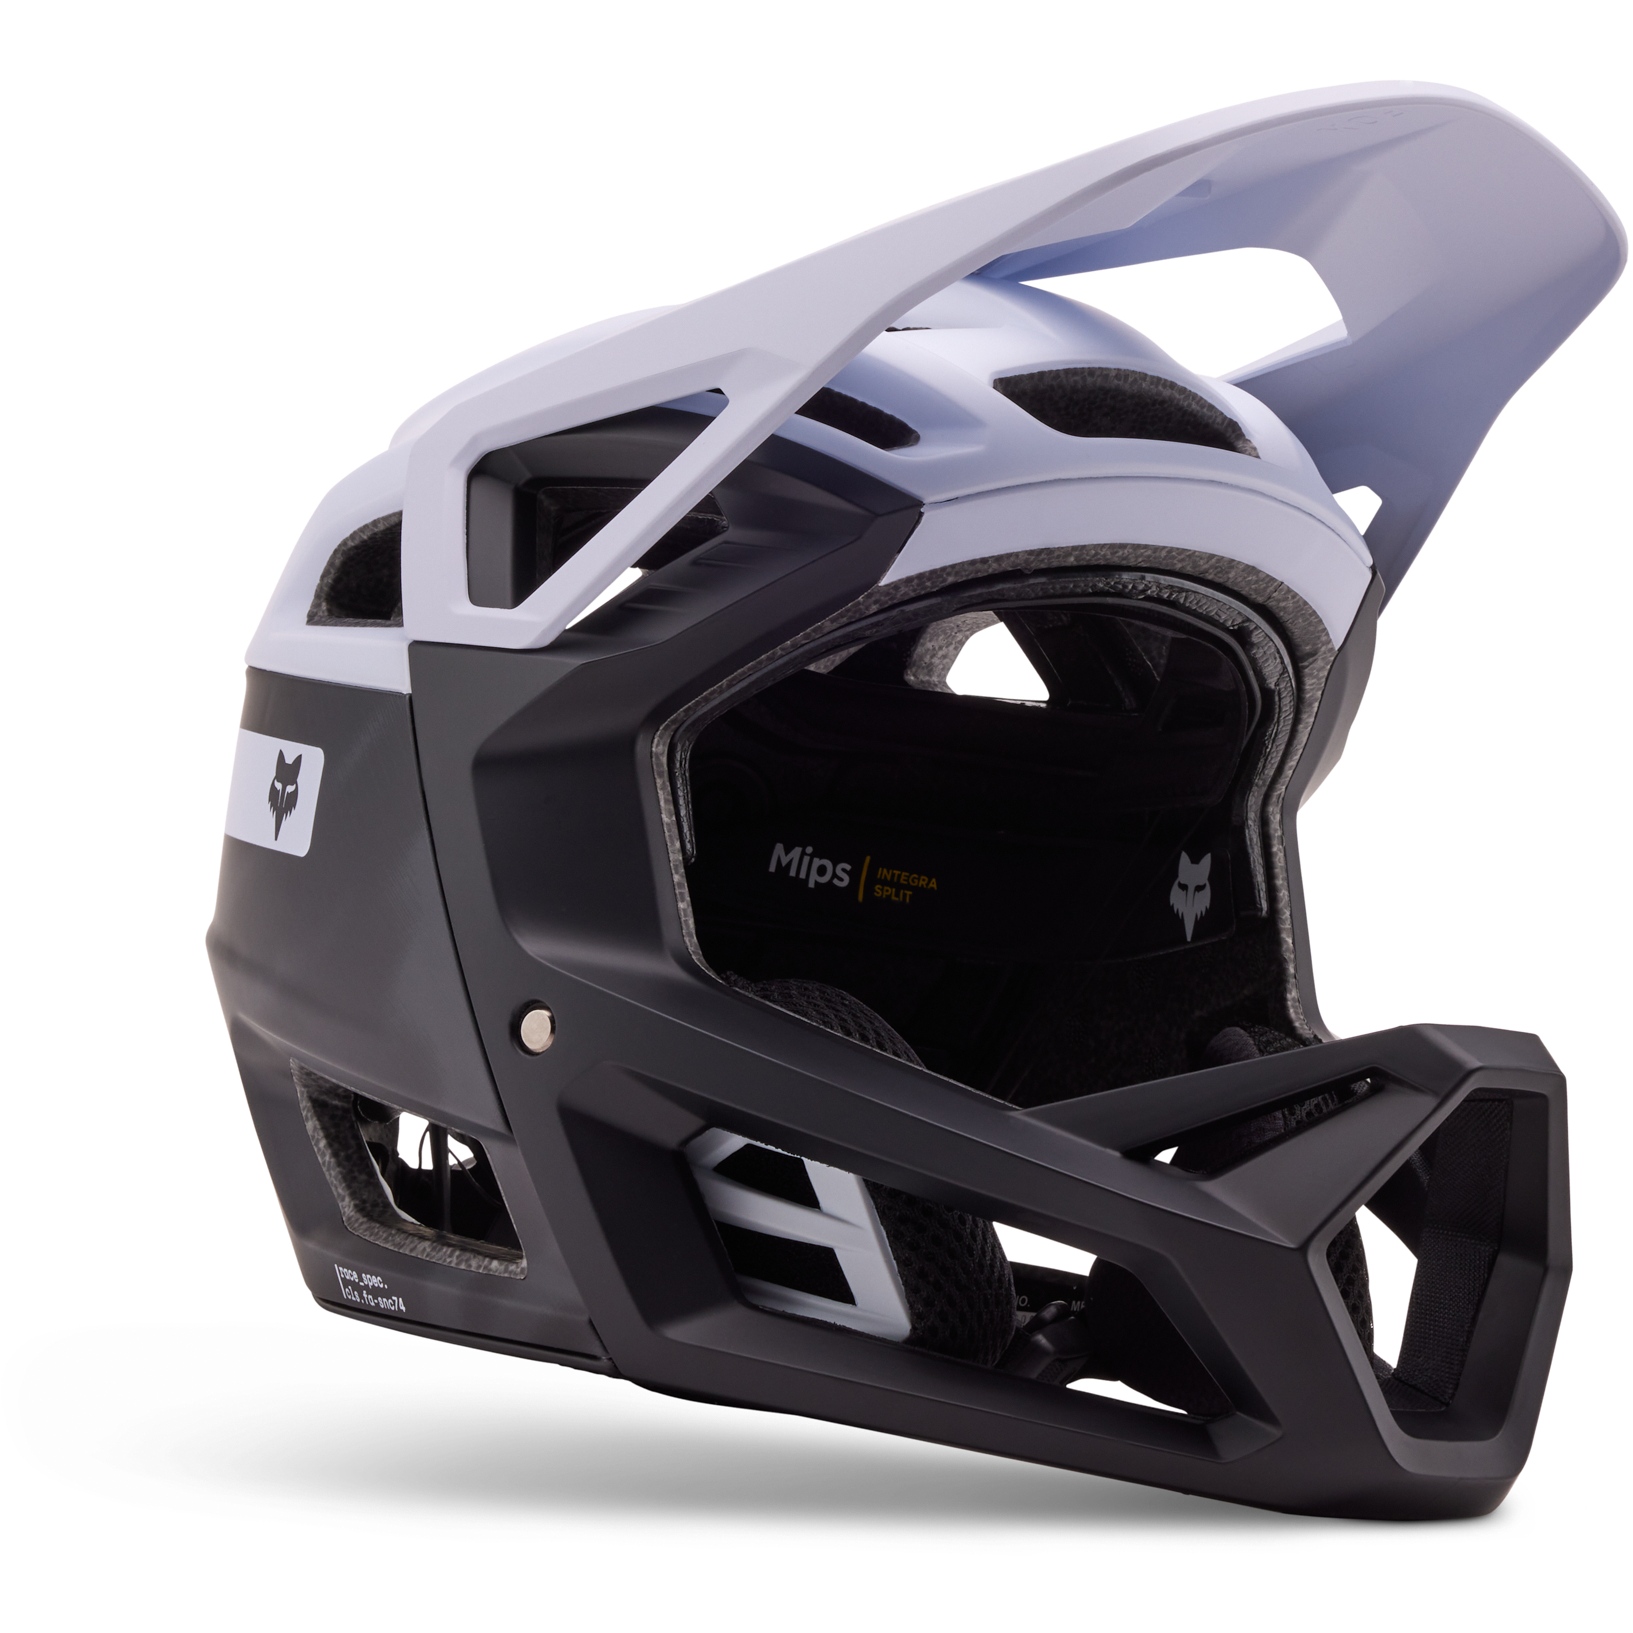 Produktbild von FOX Proframe RS Full Face Helm - Taunt - weiß